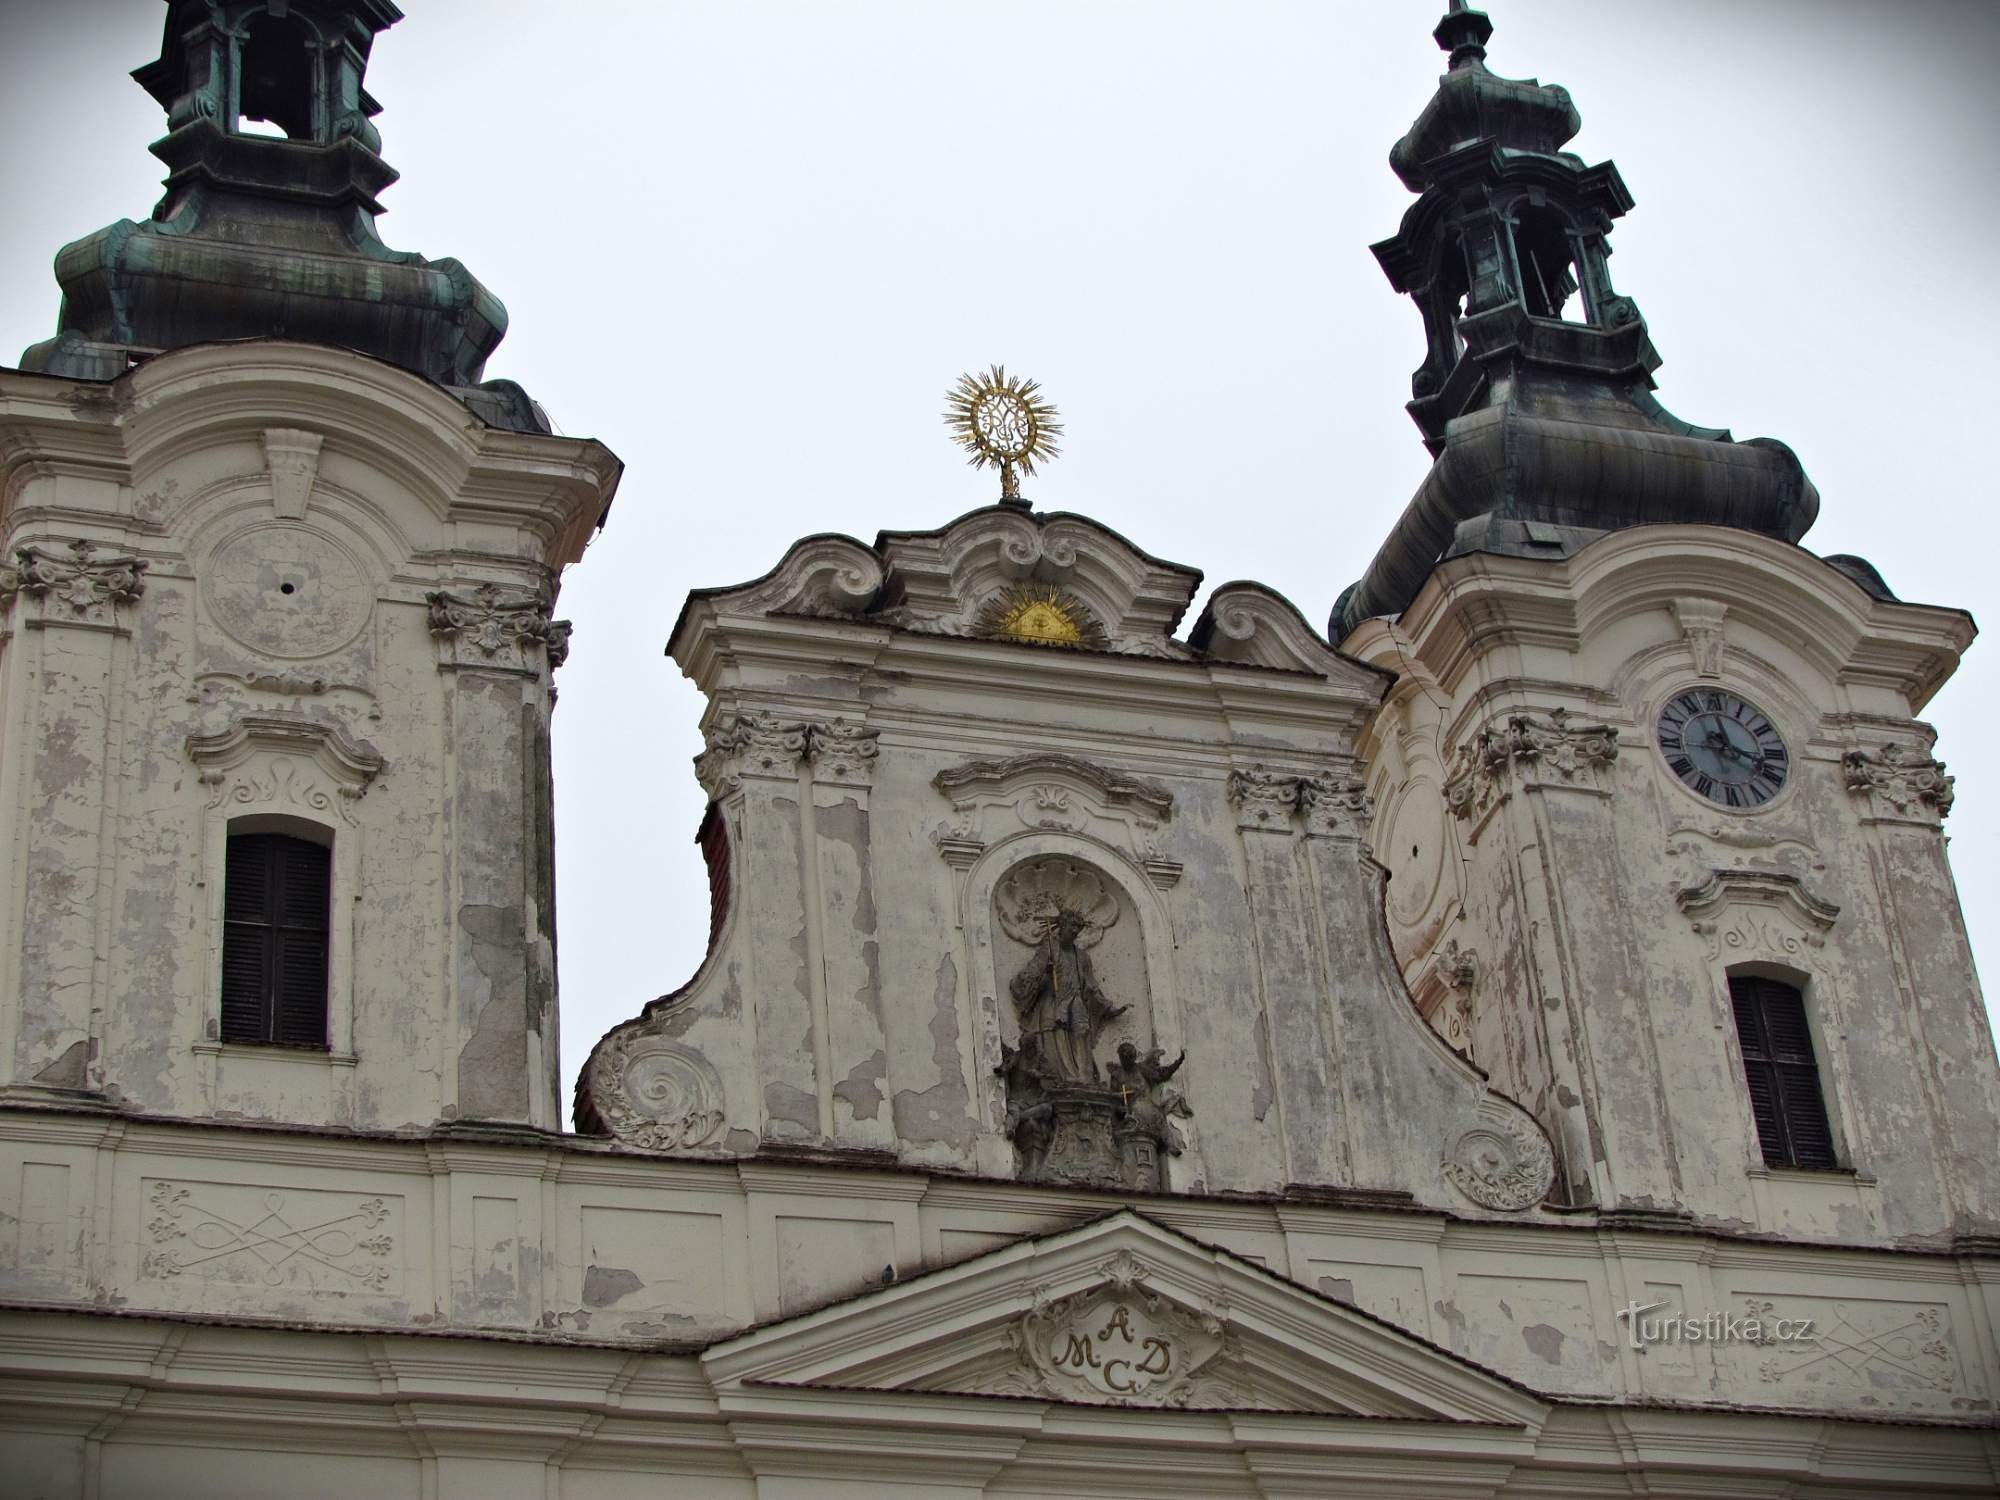 Uherské Hradiště - територія єзуїтського колегіуму, костелу та семінарії